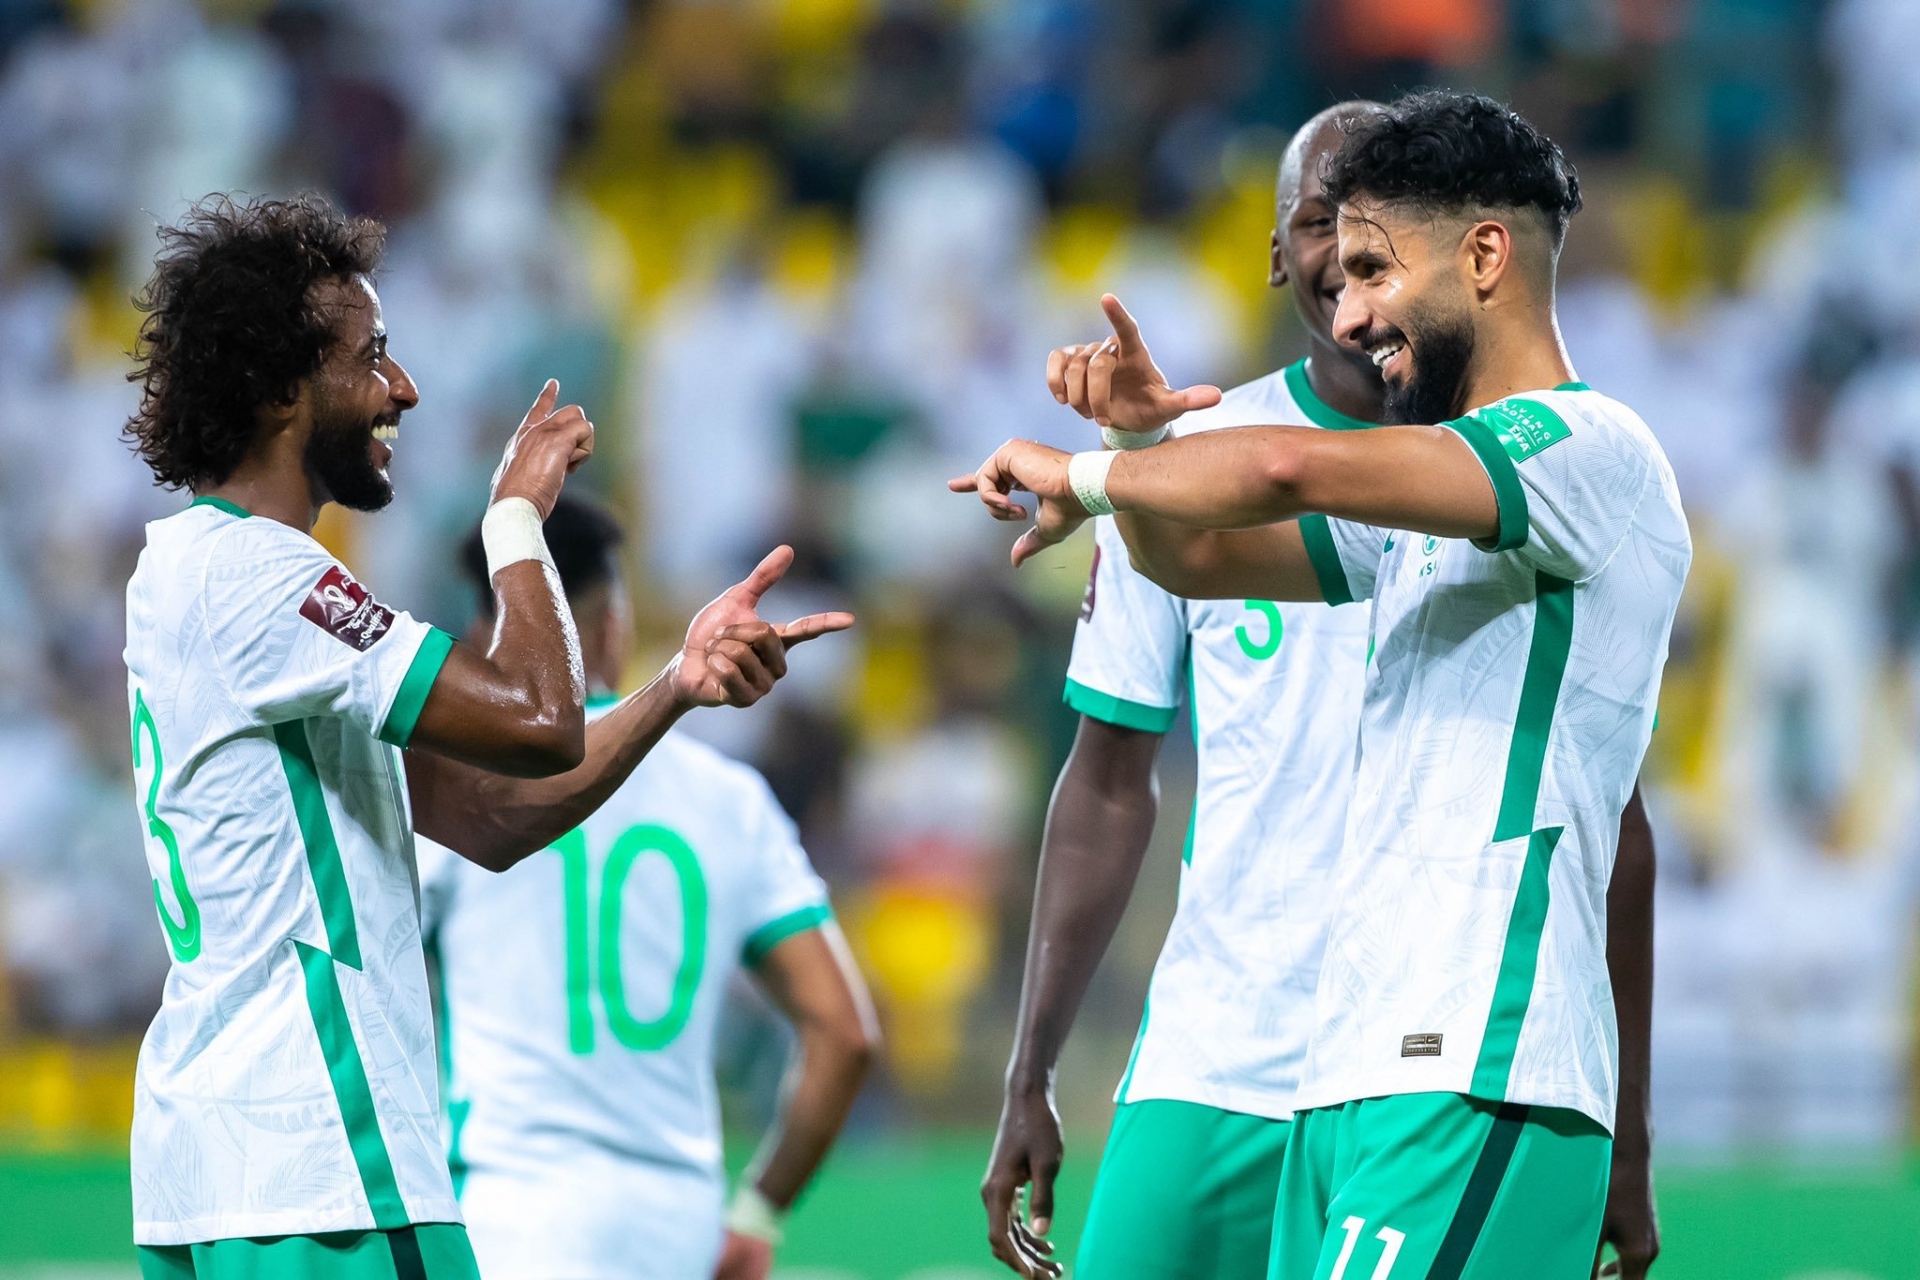 Saudi Arabia đang dẫn đầu bảng B, thắng 4, hòa 1. Tốc độ chơi bóng, tốc độ chuyển trạng thái tấn công - phòng ngự của những đội bóng hàng đầu châu Á là rất nhanh.